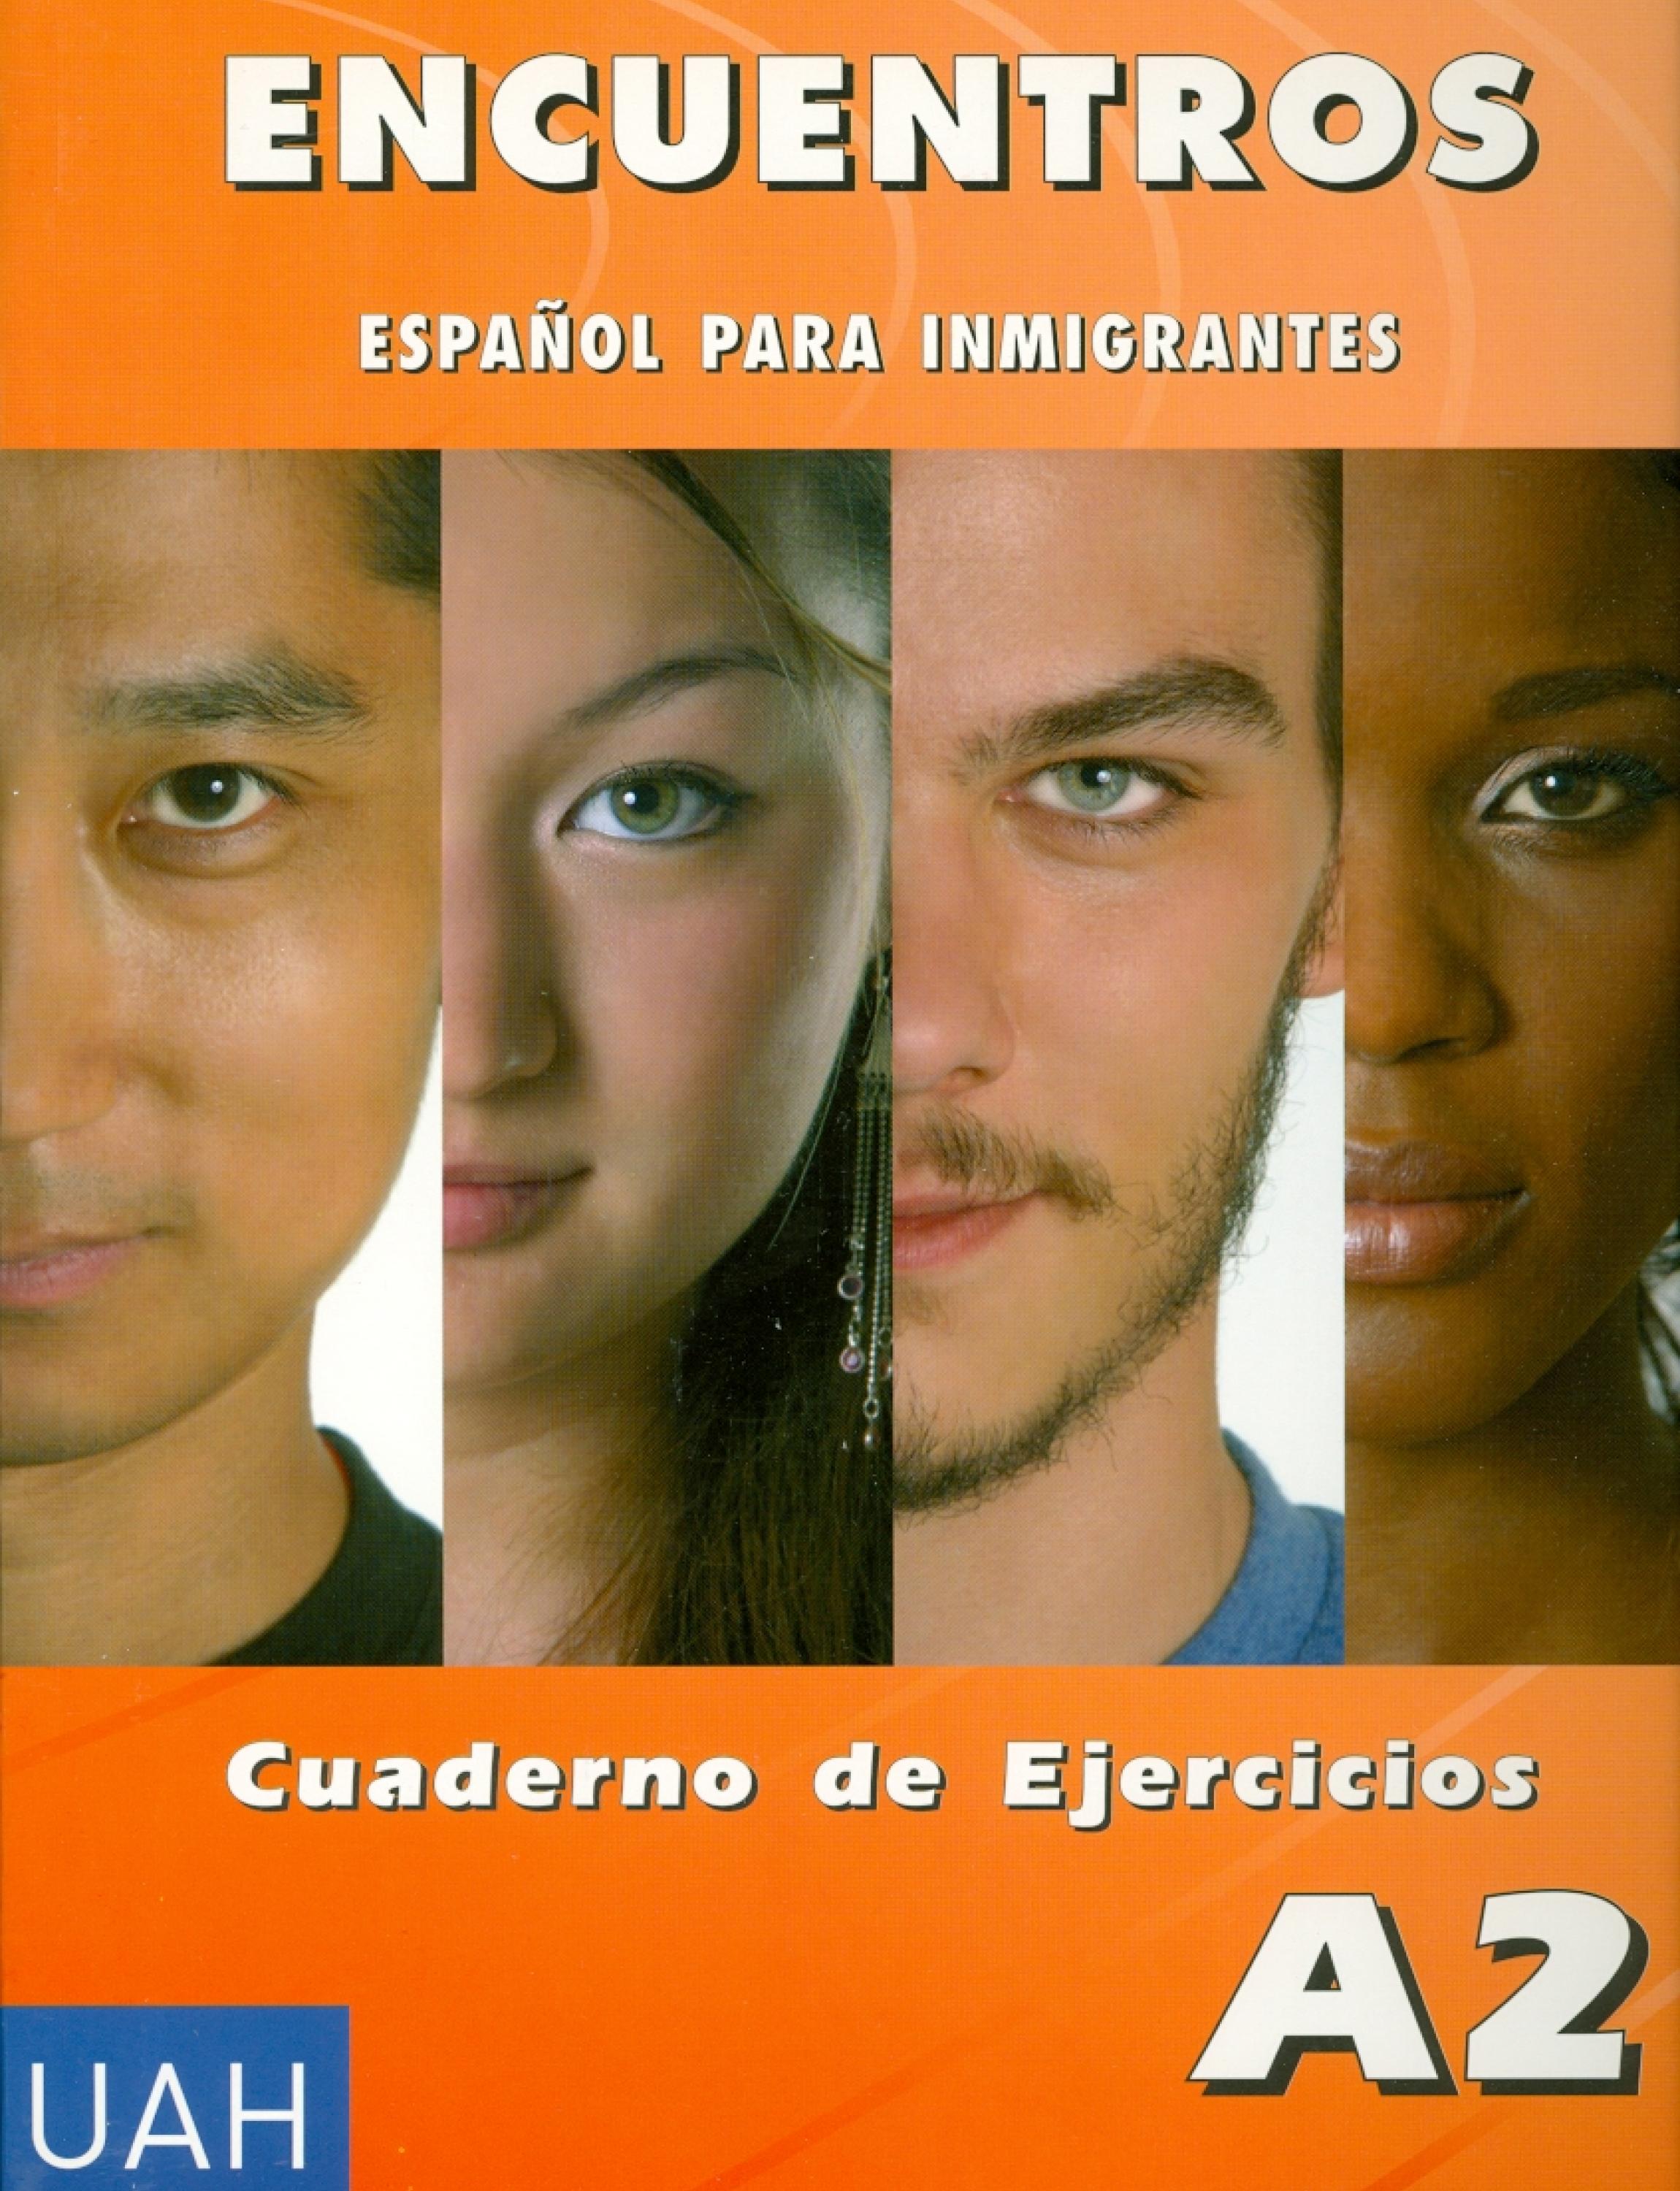 Encuentros - Español para inmigrantes. A2. Cuaderno de ejercicios